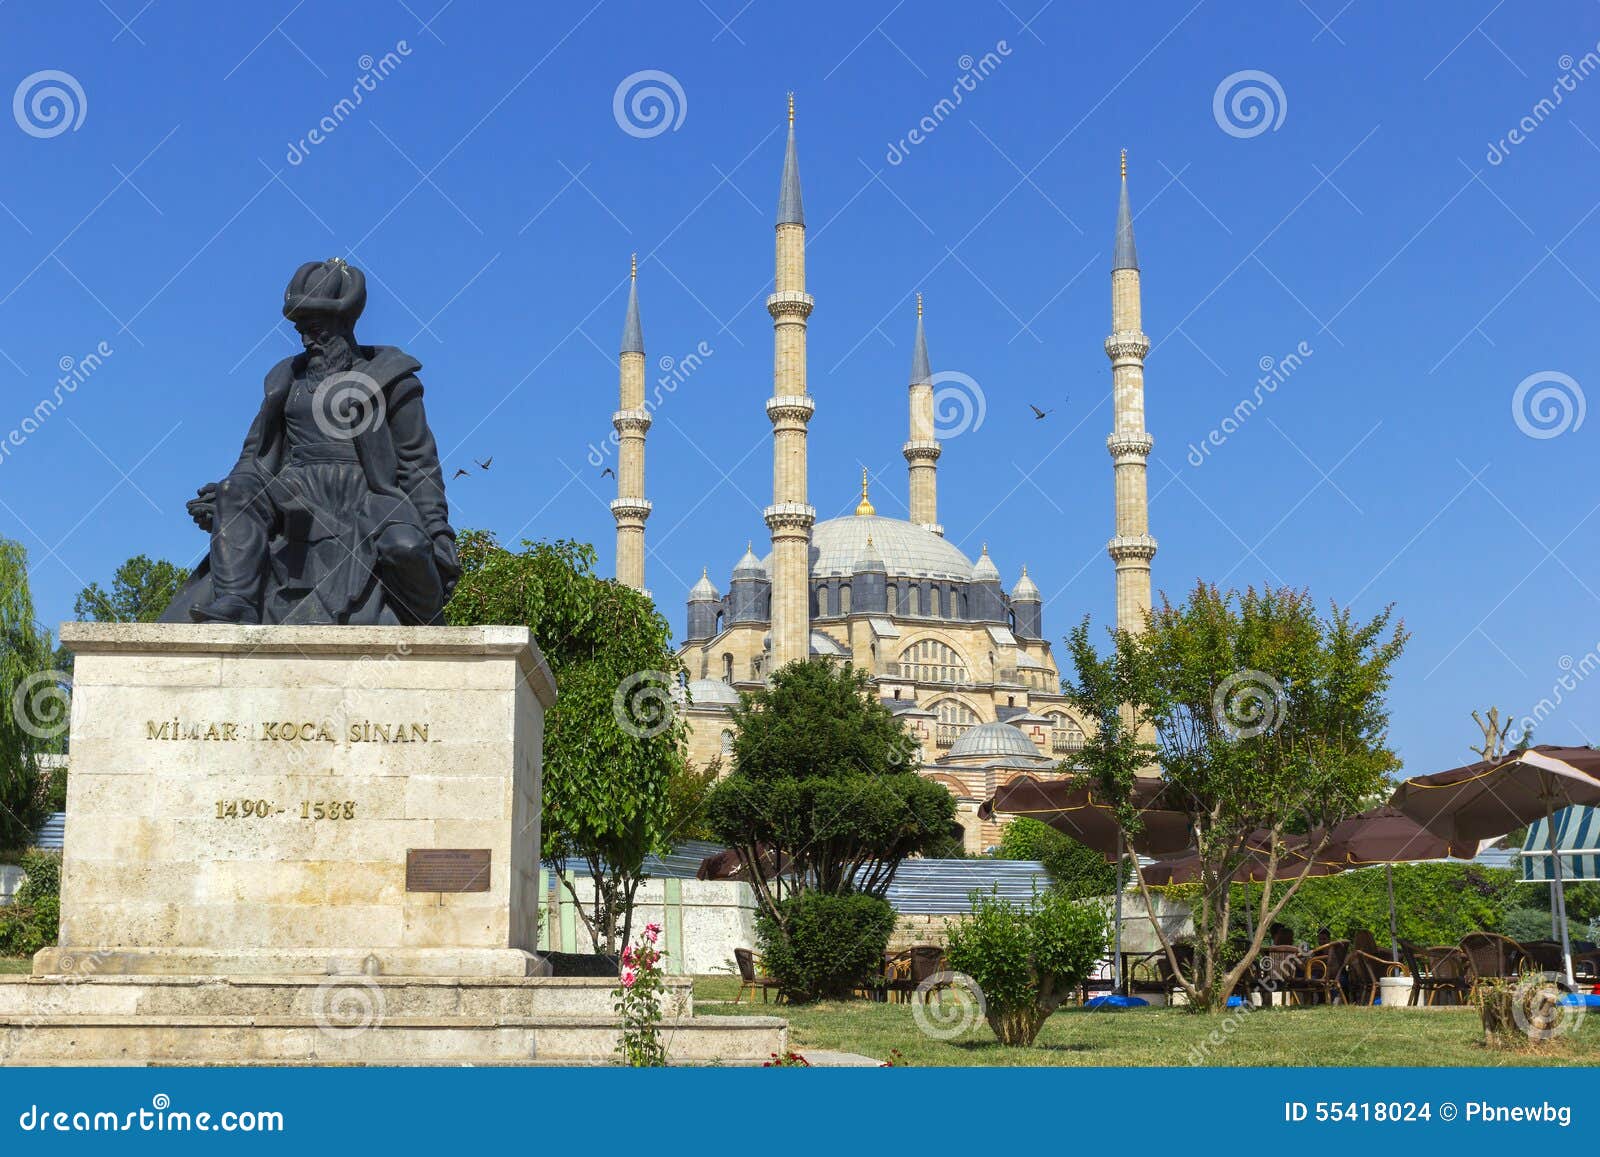 selimiye camii in the city edirne